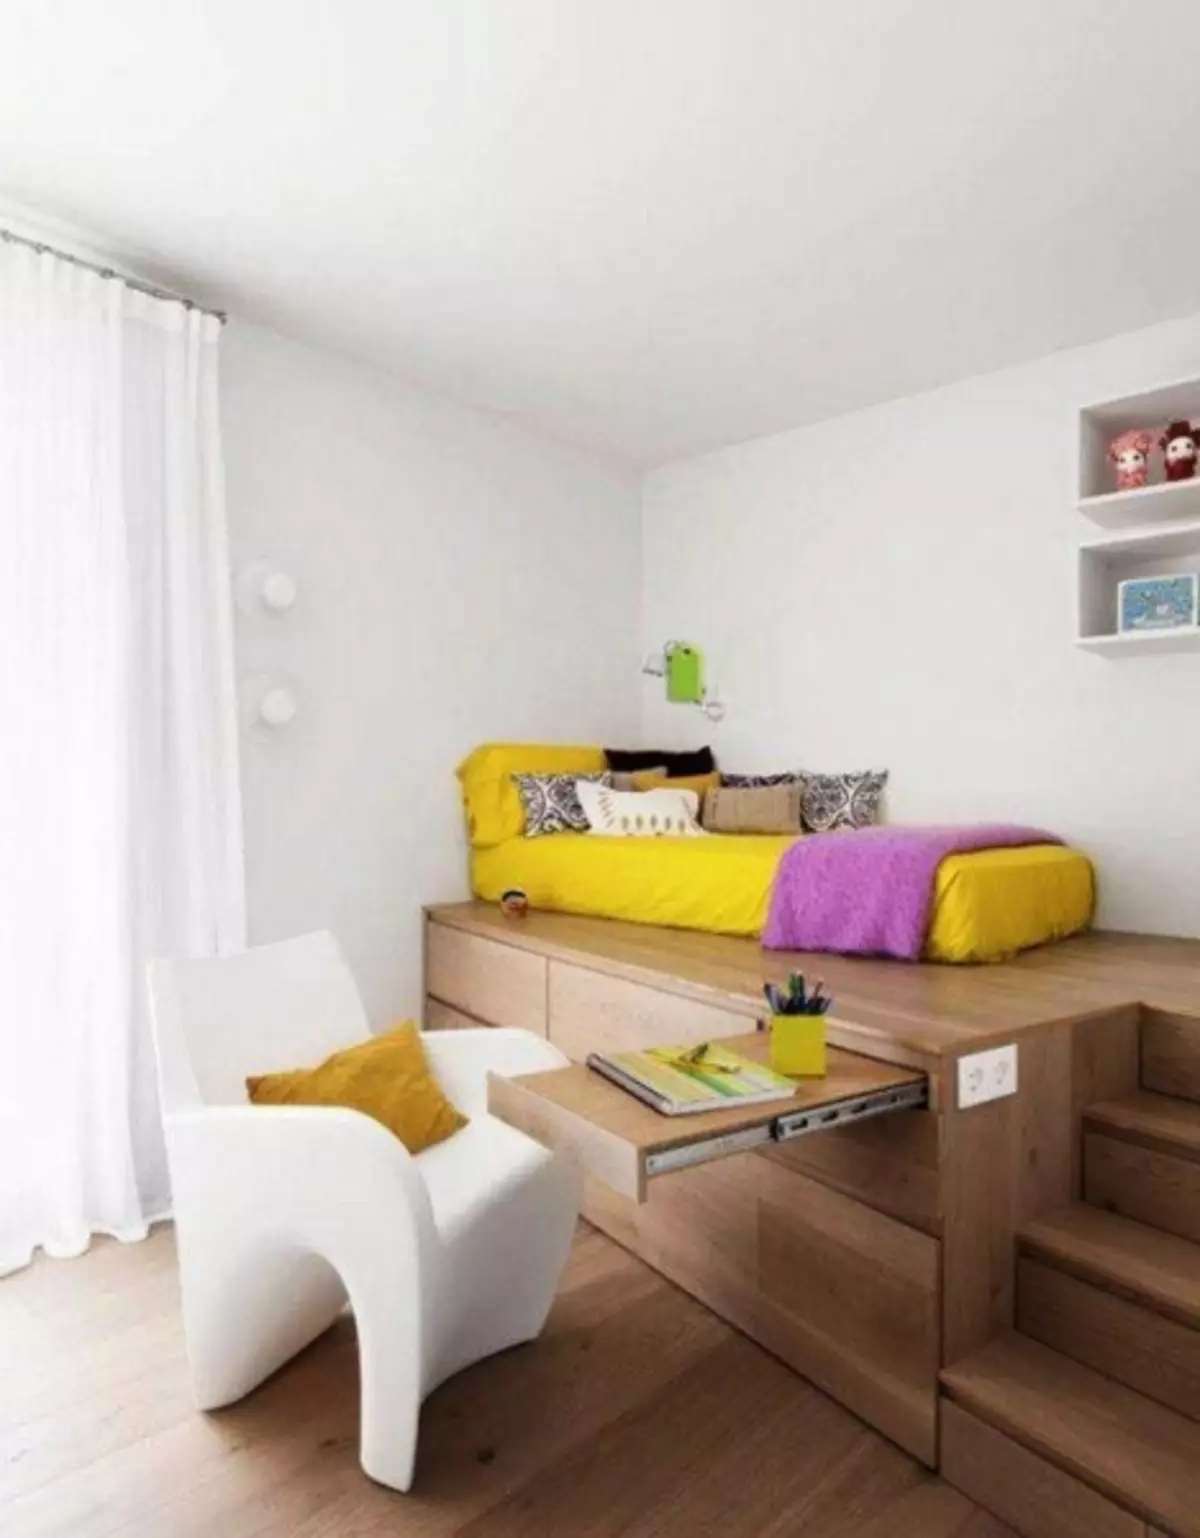 Interior apartemen pikeun kulawarga ngora sareng murangkalih: Pilihan pikeun susunan perabot di kamar (39 poto)